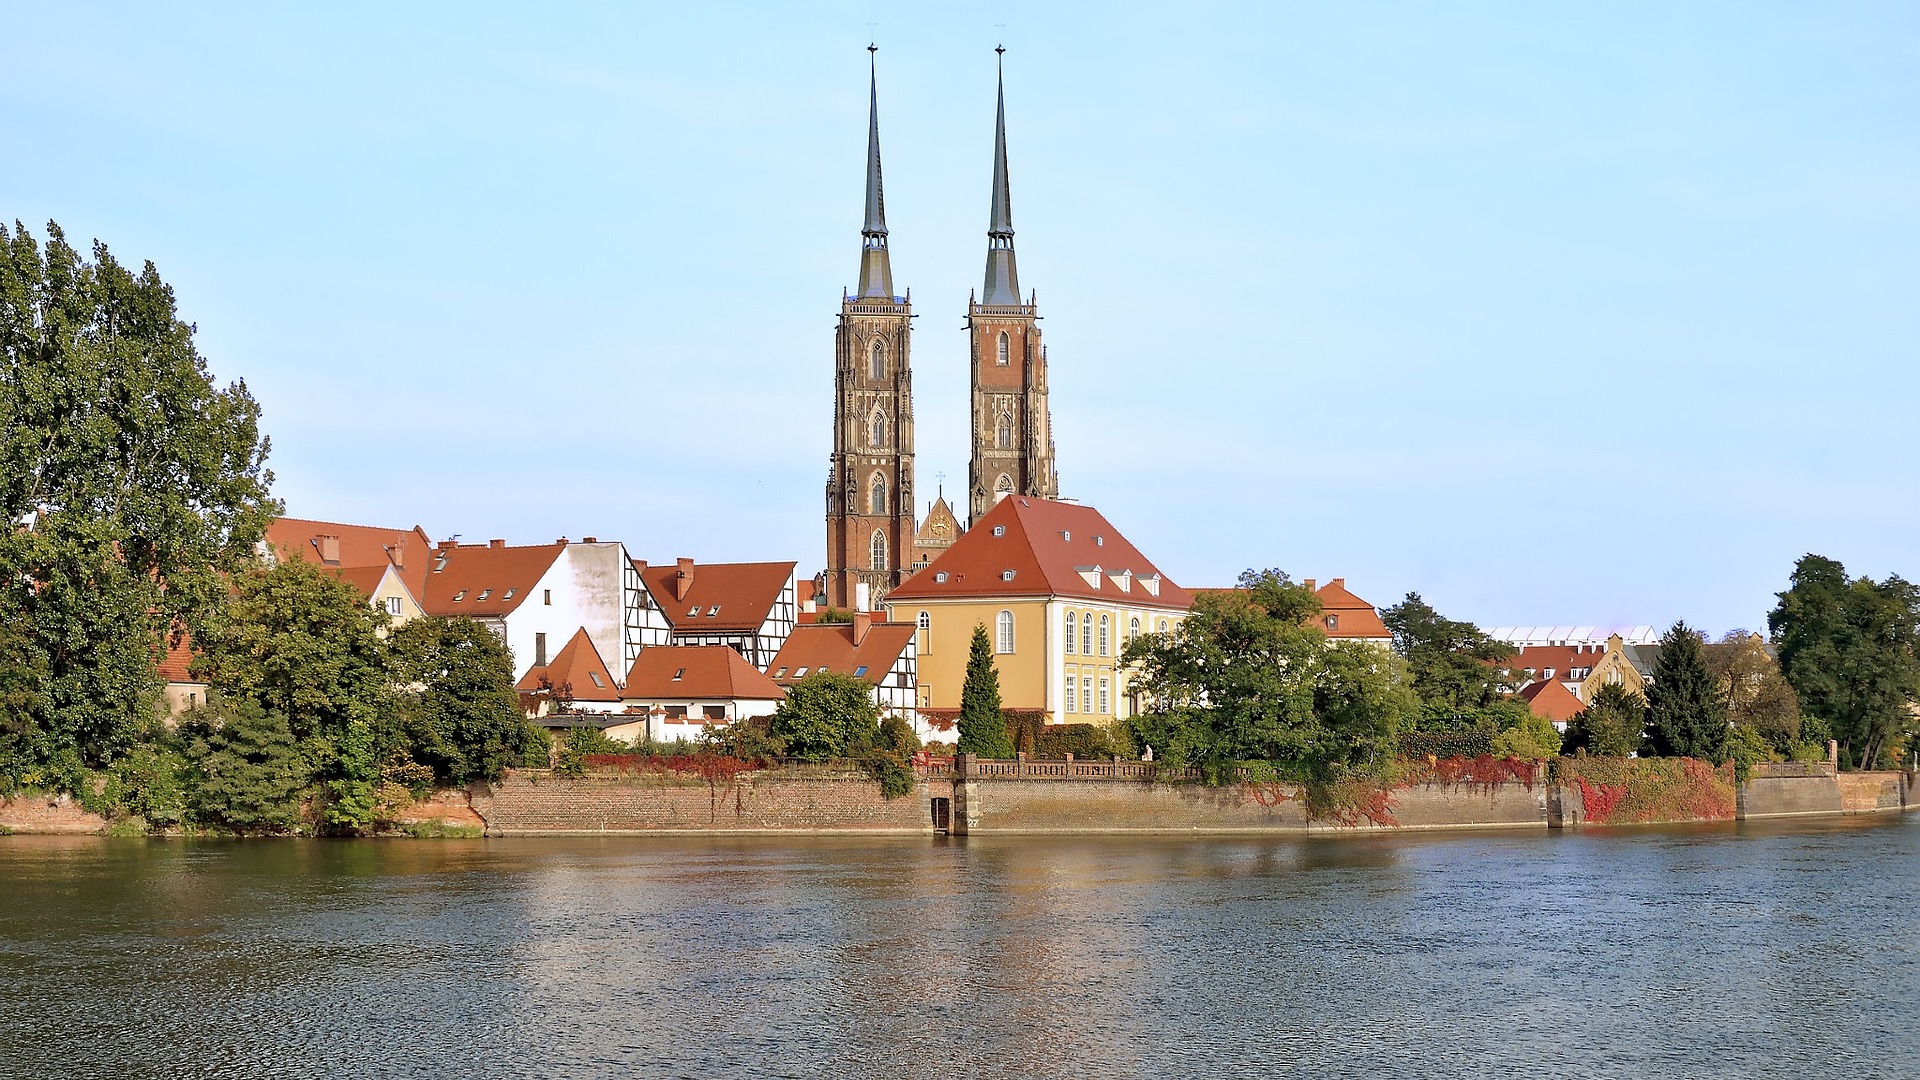 Wrocław Cathedral (Catedral de San Juan Bautista